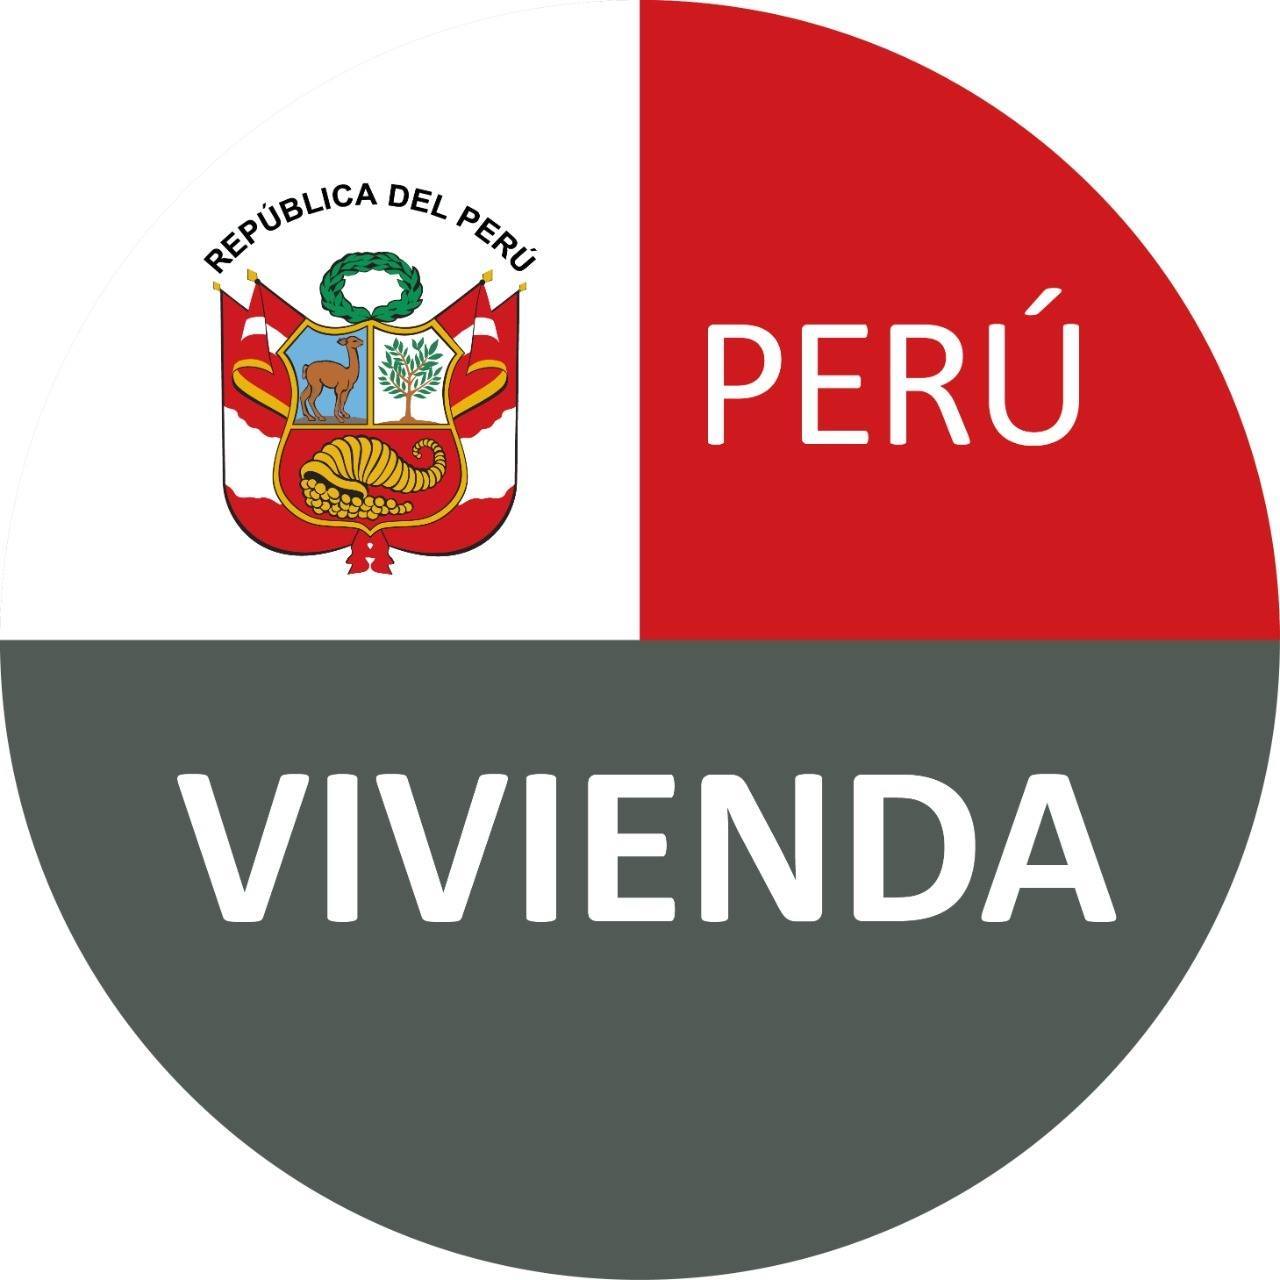 MVCS Logo